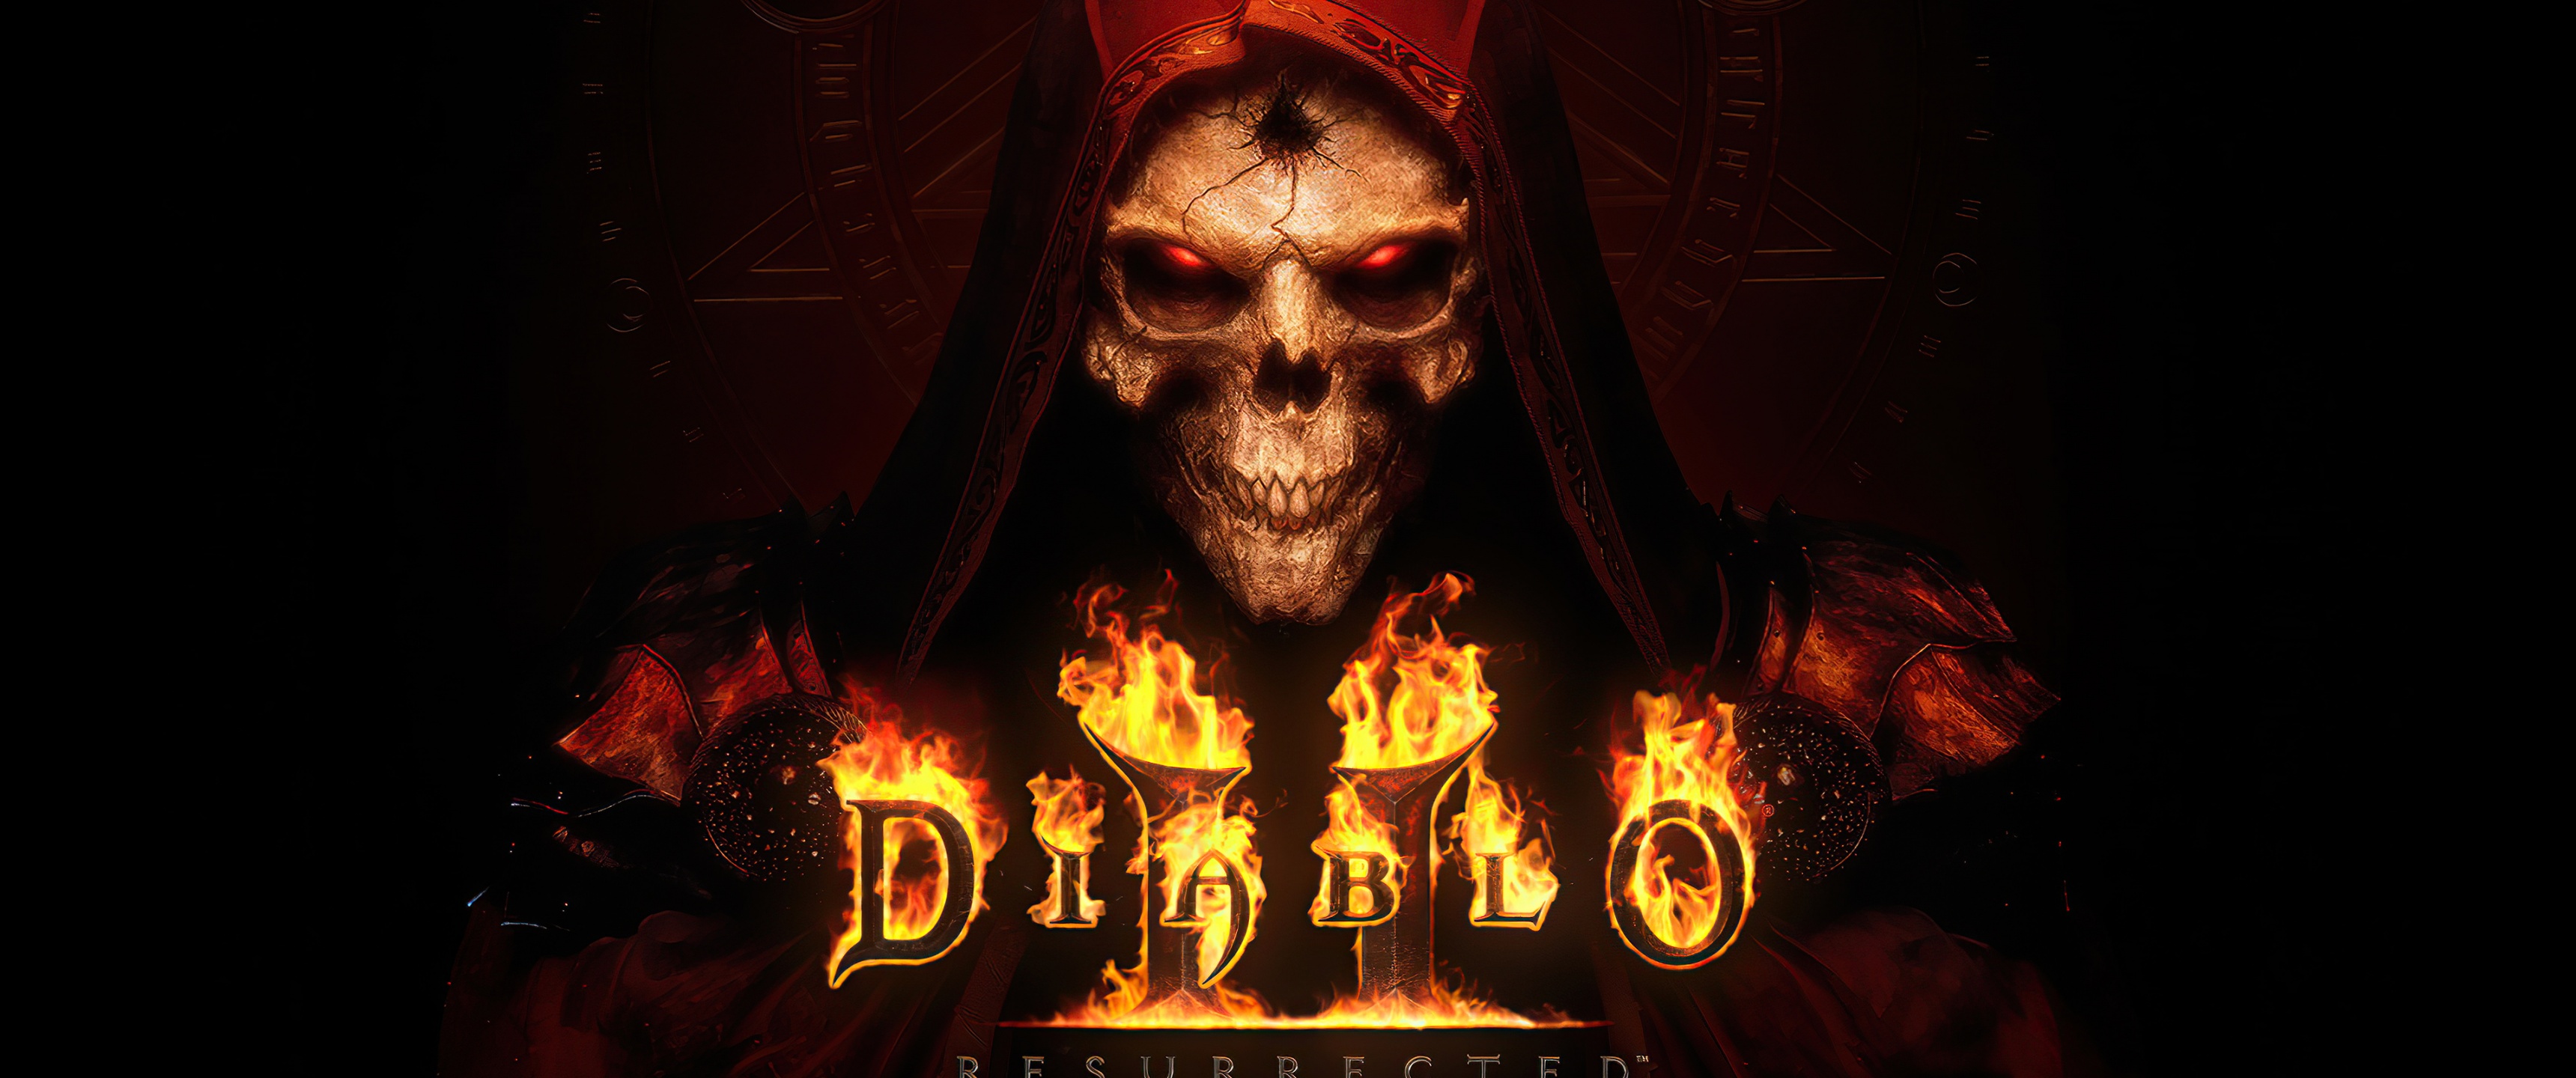 Diablo II: Resurrected Wallpaper 4K, PC Games, Games